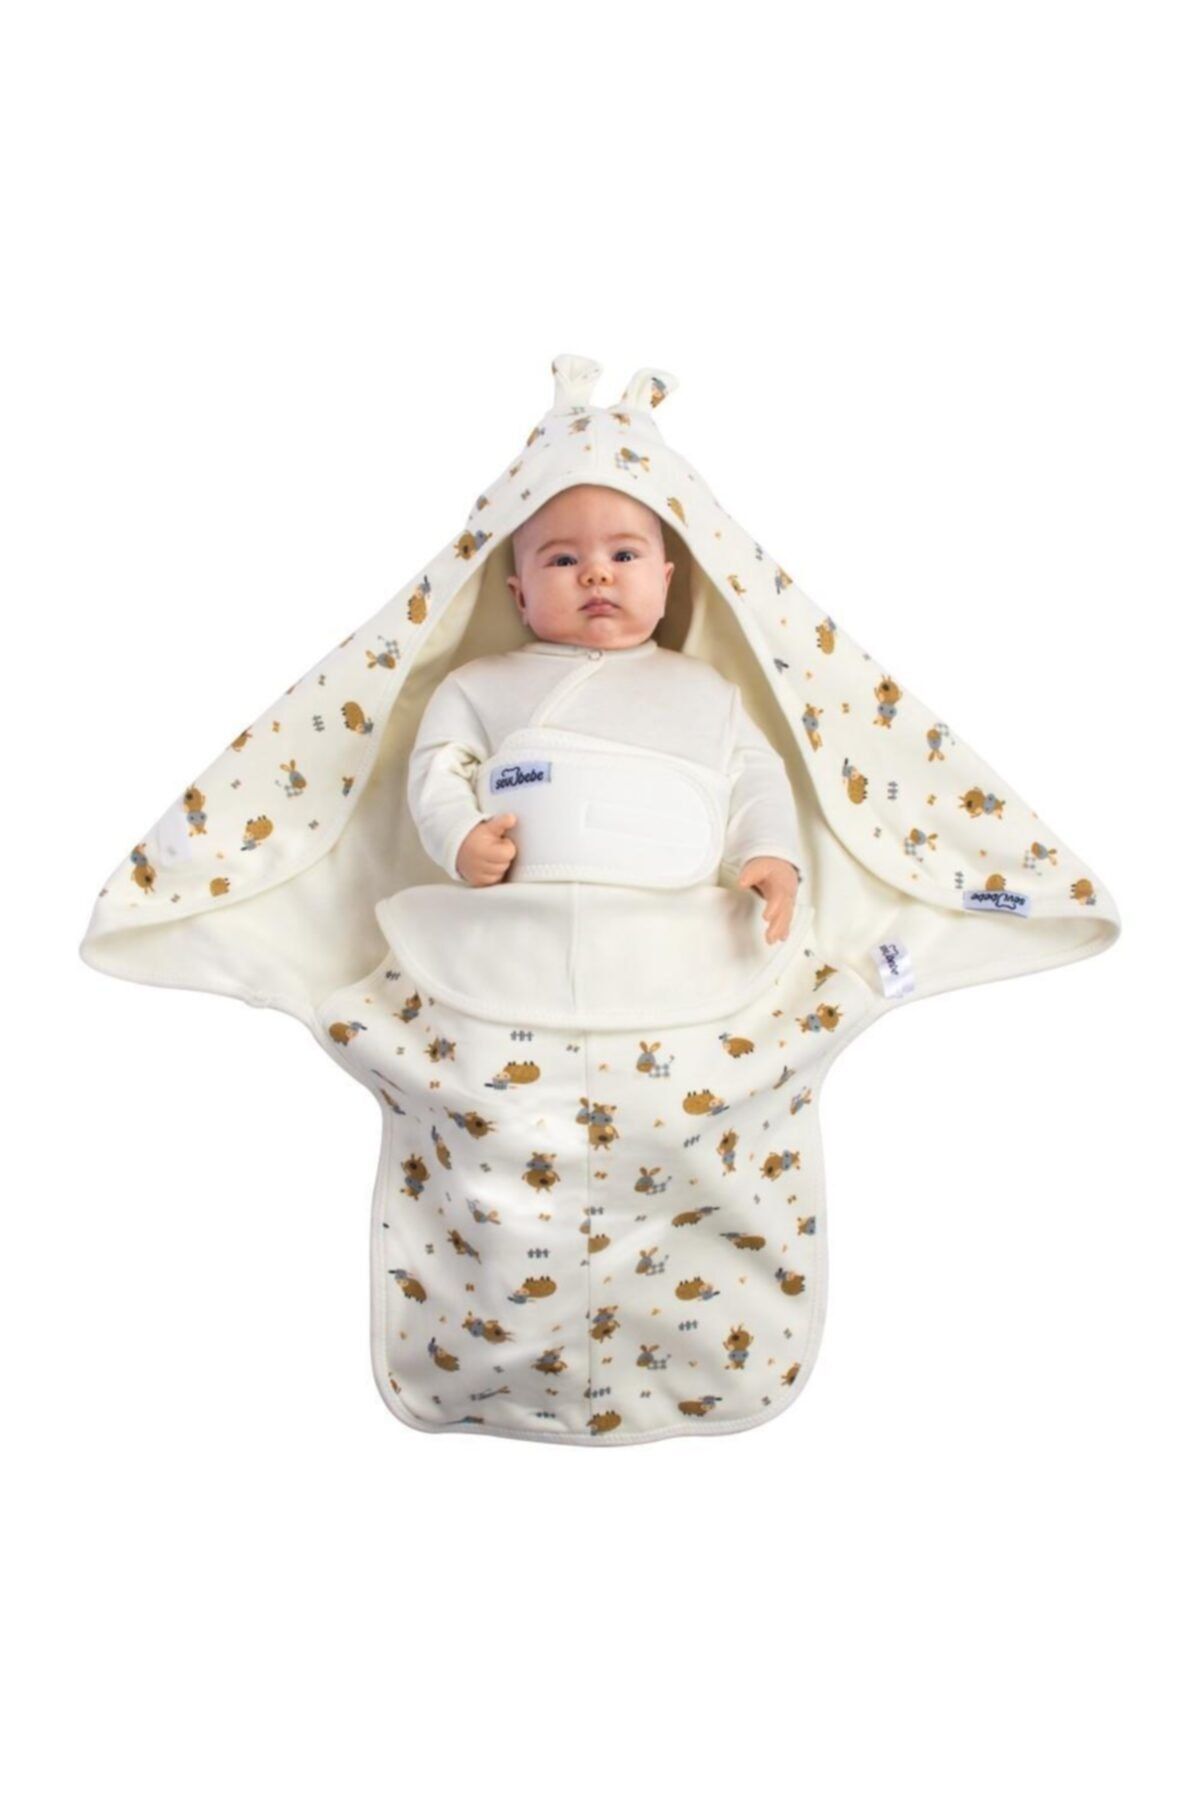 Sevi Bebe Interlok Bel Koruyuculu Kundak Art-558 Bebek Kundağı